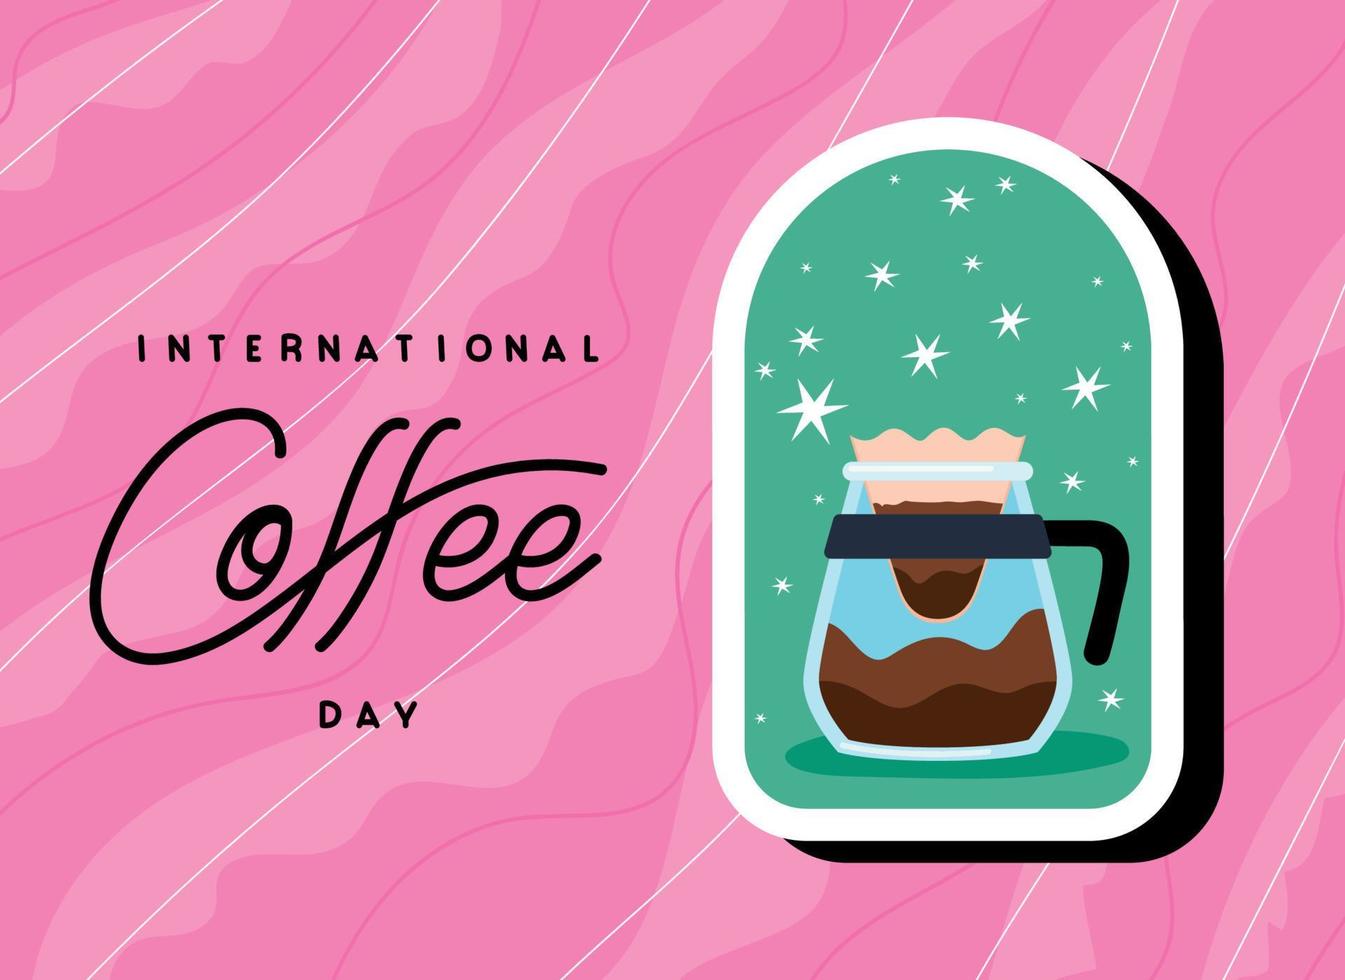 internationell kaffe dag kartell vektor